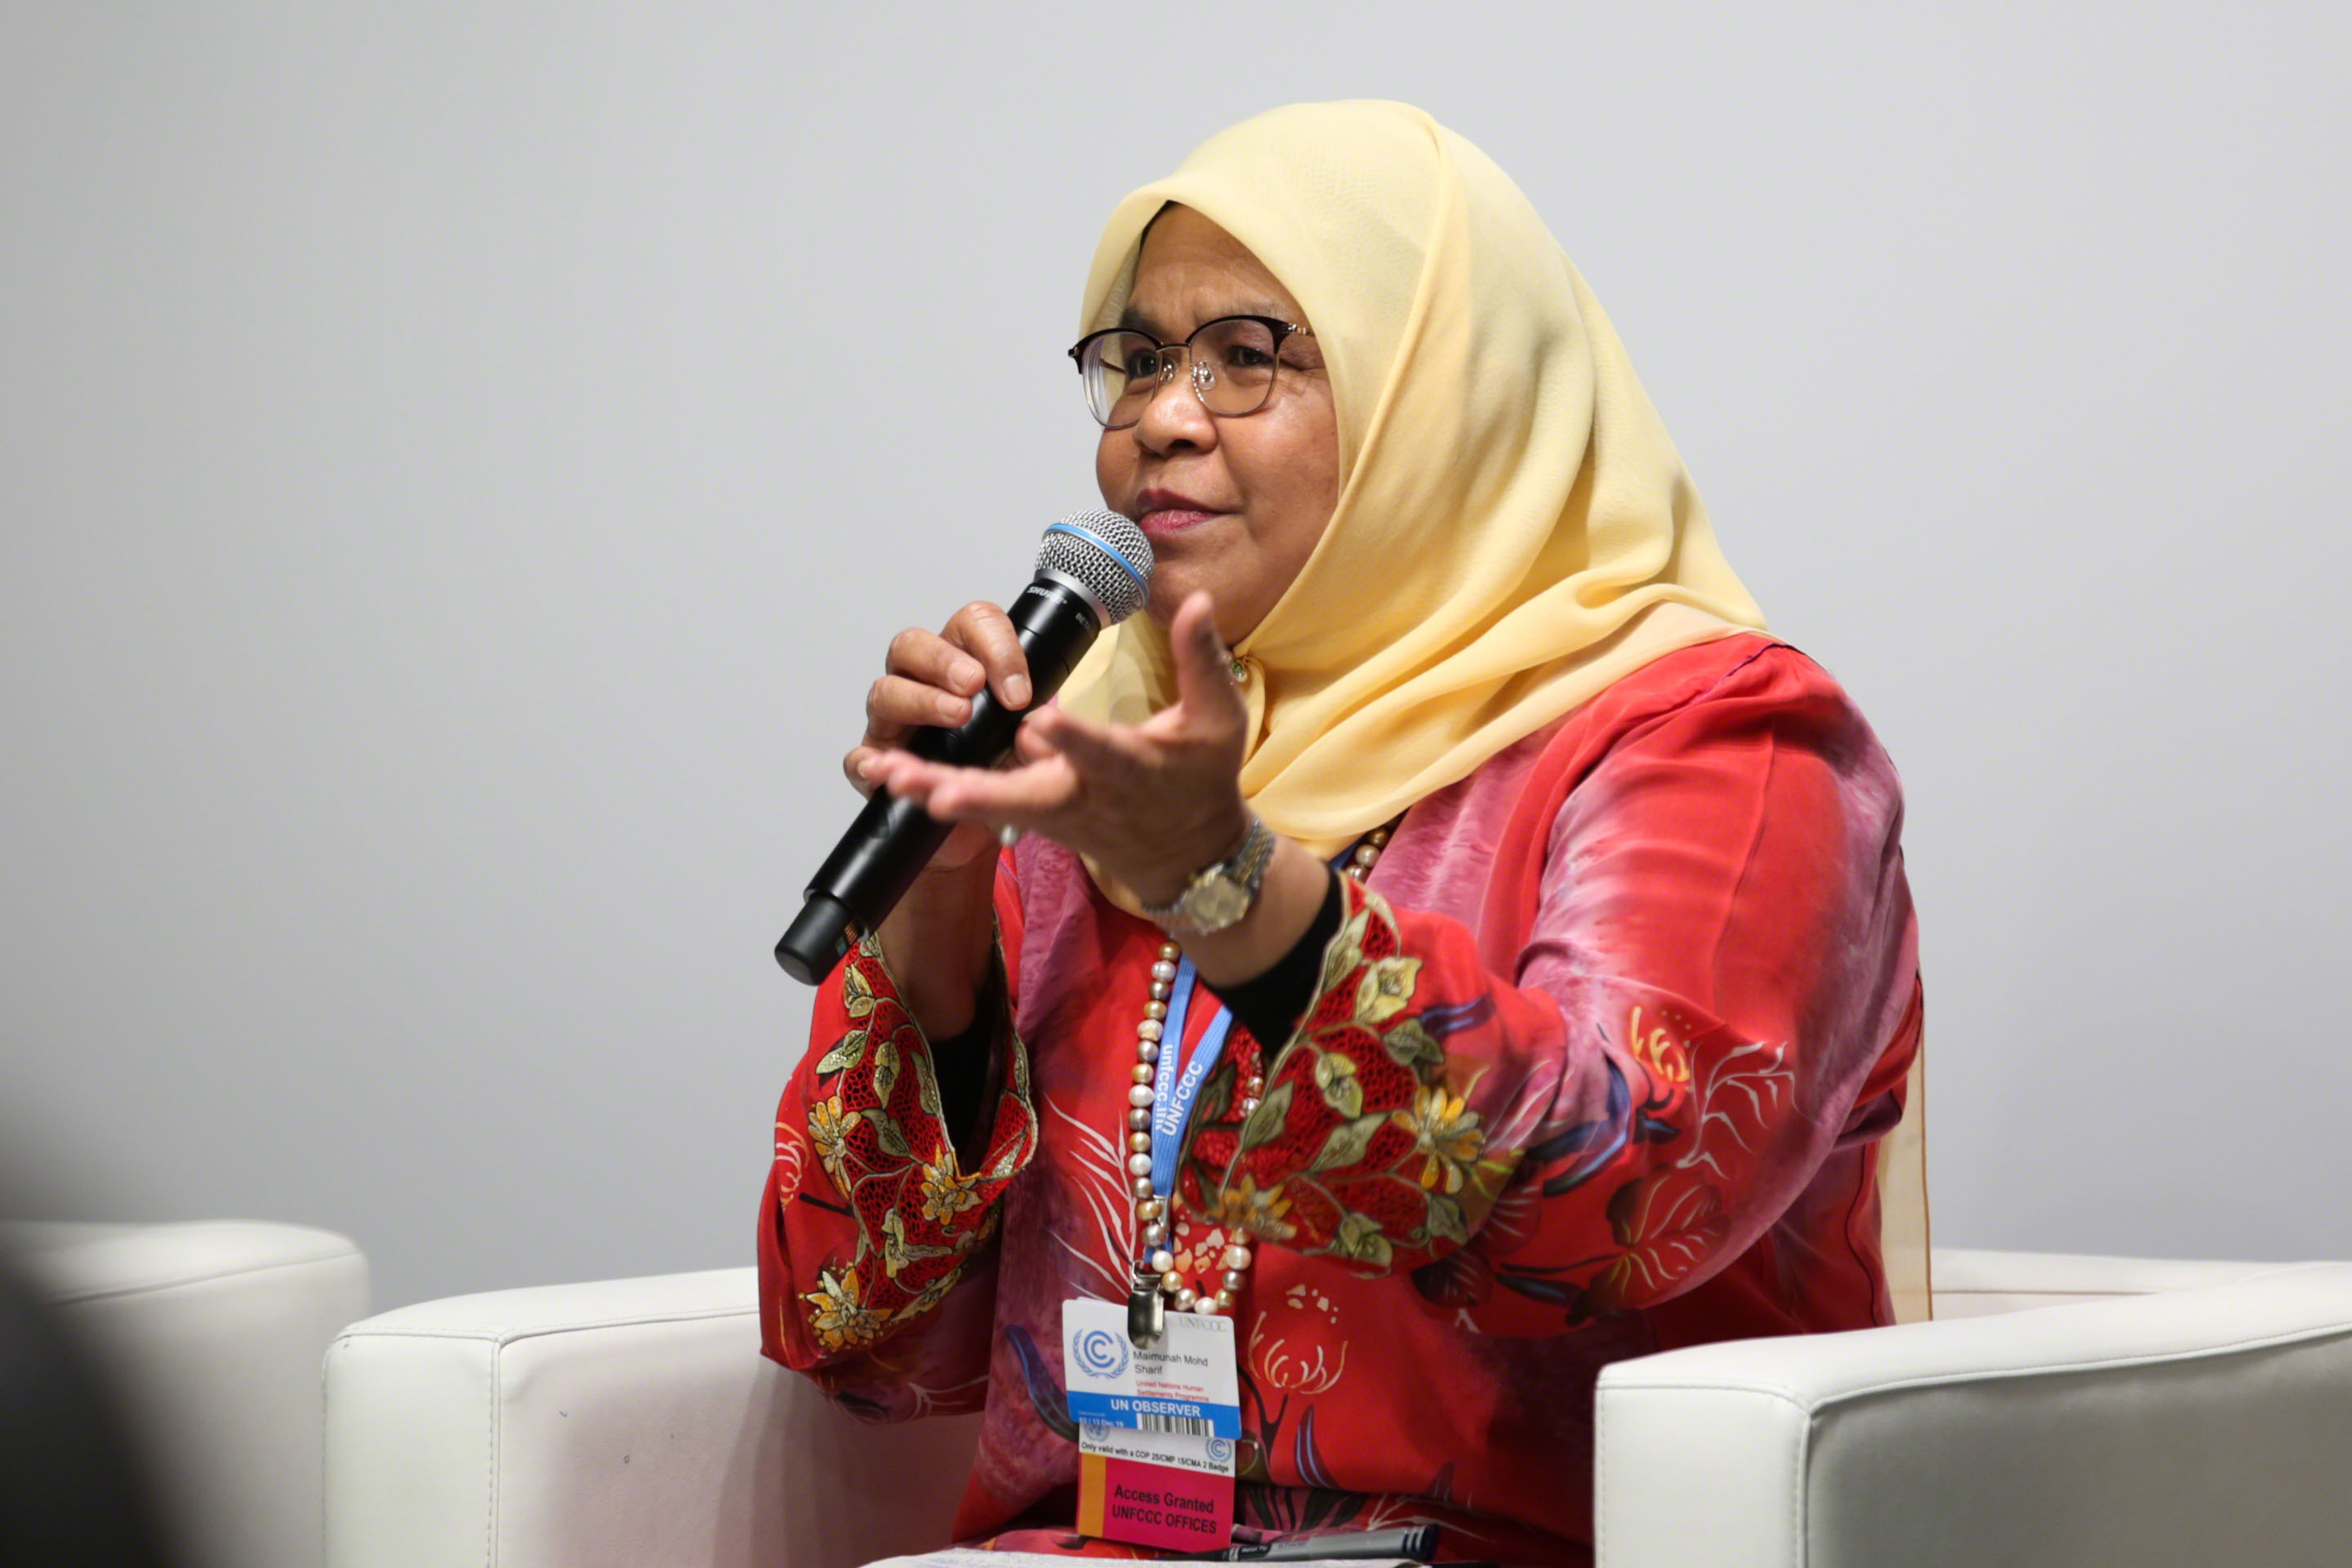 The Executive Director of UN-Habitat, Ms. Maimunah Mohd Sharif,